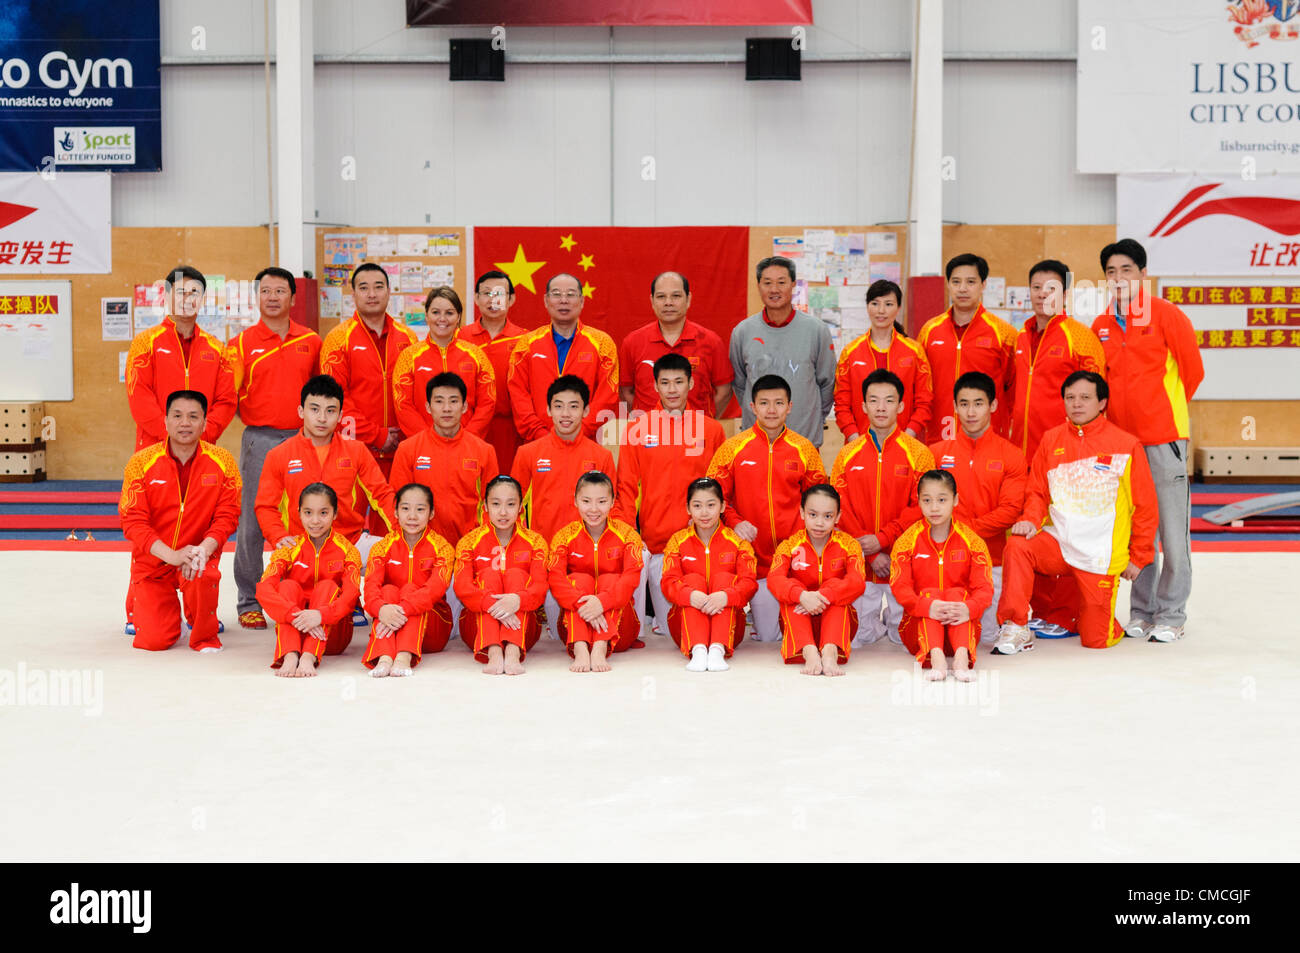 Lisburn, 18/07/2012 - gymnastique chinoise et les entraîneurs de l'équipe pour les Jeux Olympiques de 2012 à Londres à Lisburn, Irlande du Nord Banque D'Images